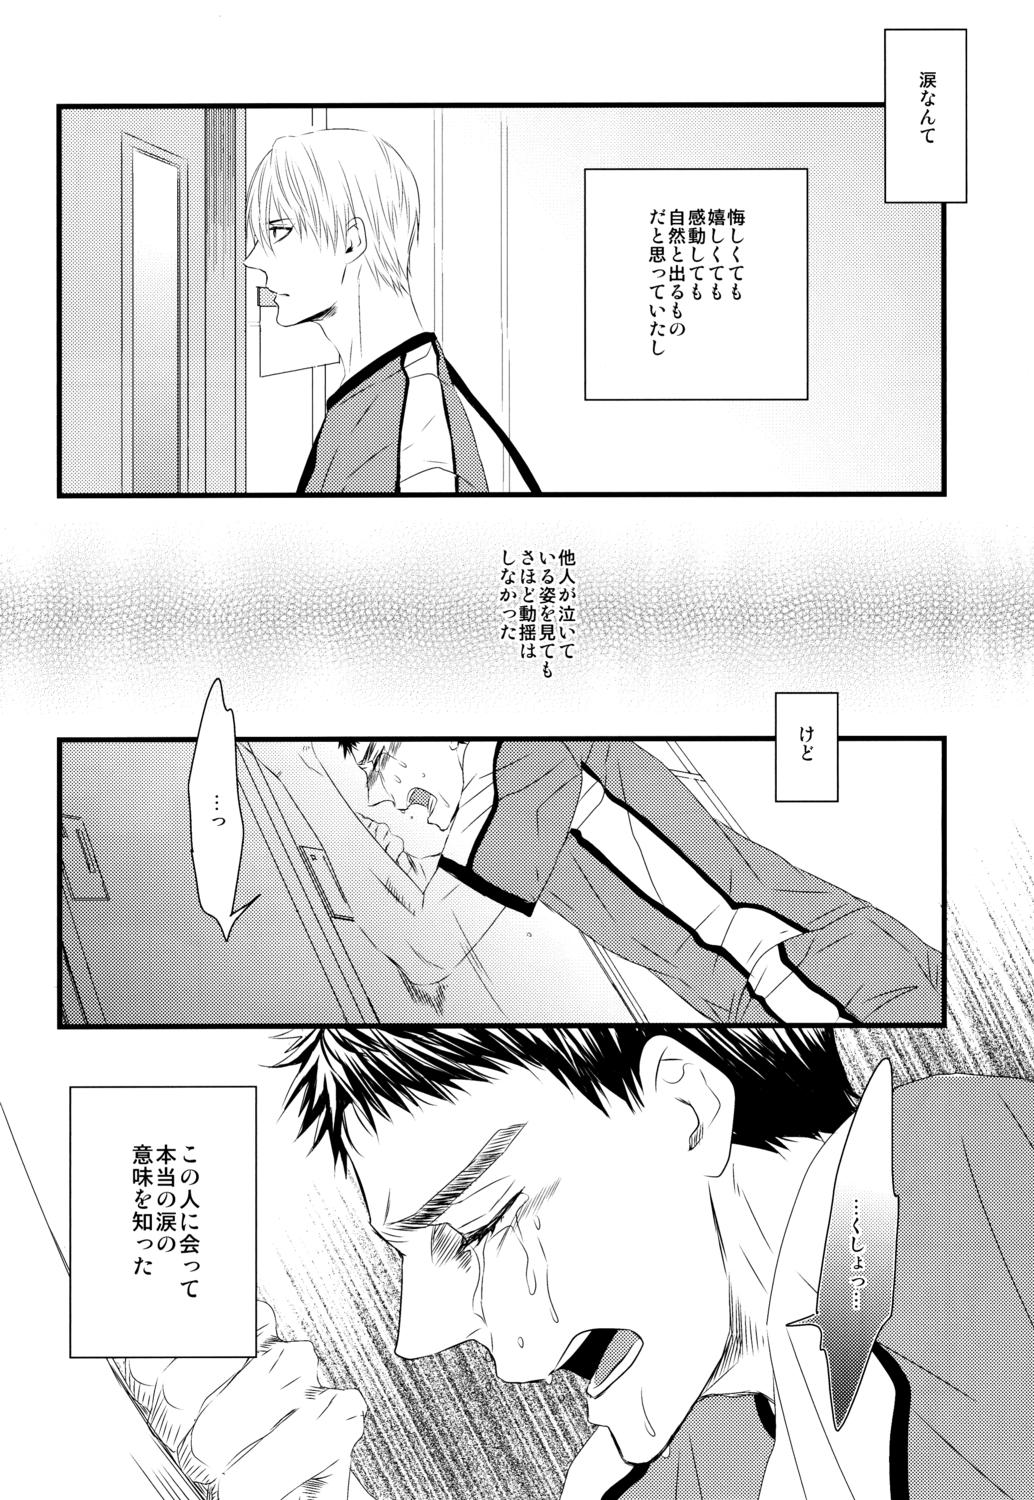 Gros Seins Soshite Boku wa Kirei no Imi o Shiru - Kuroko no basuke Matures - Page 7